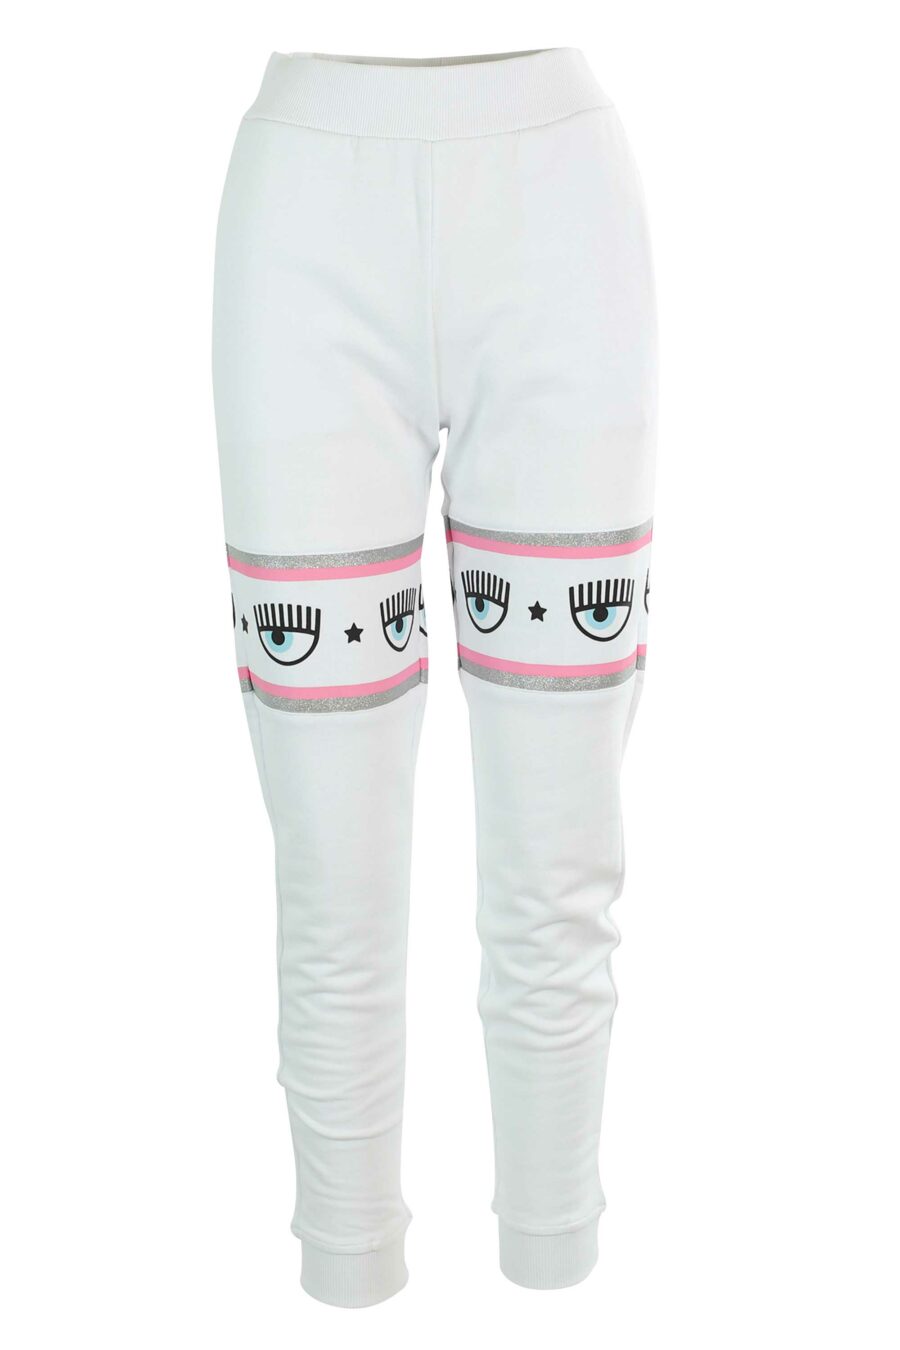 Pantalón de chándal blanco y logo en cinta rosa y plateado - 8052672419064